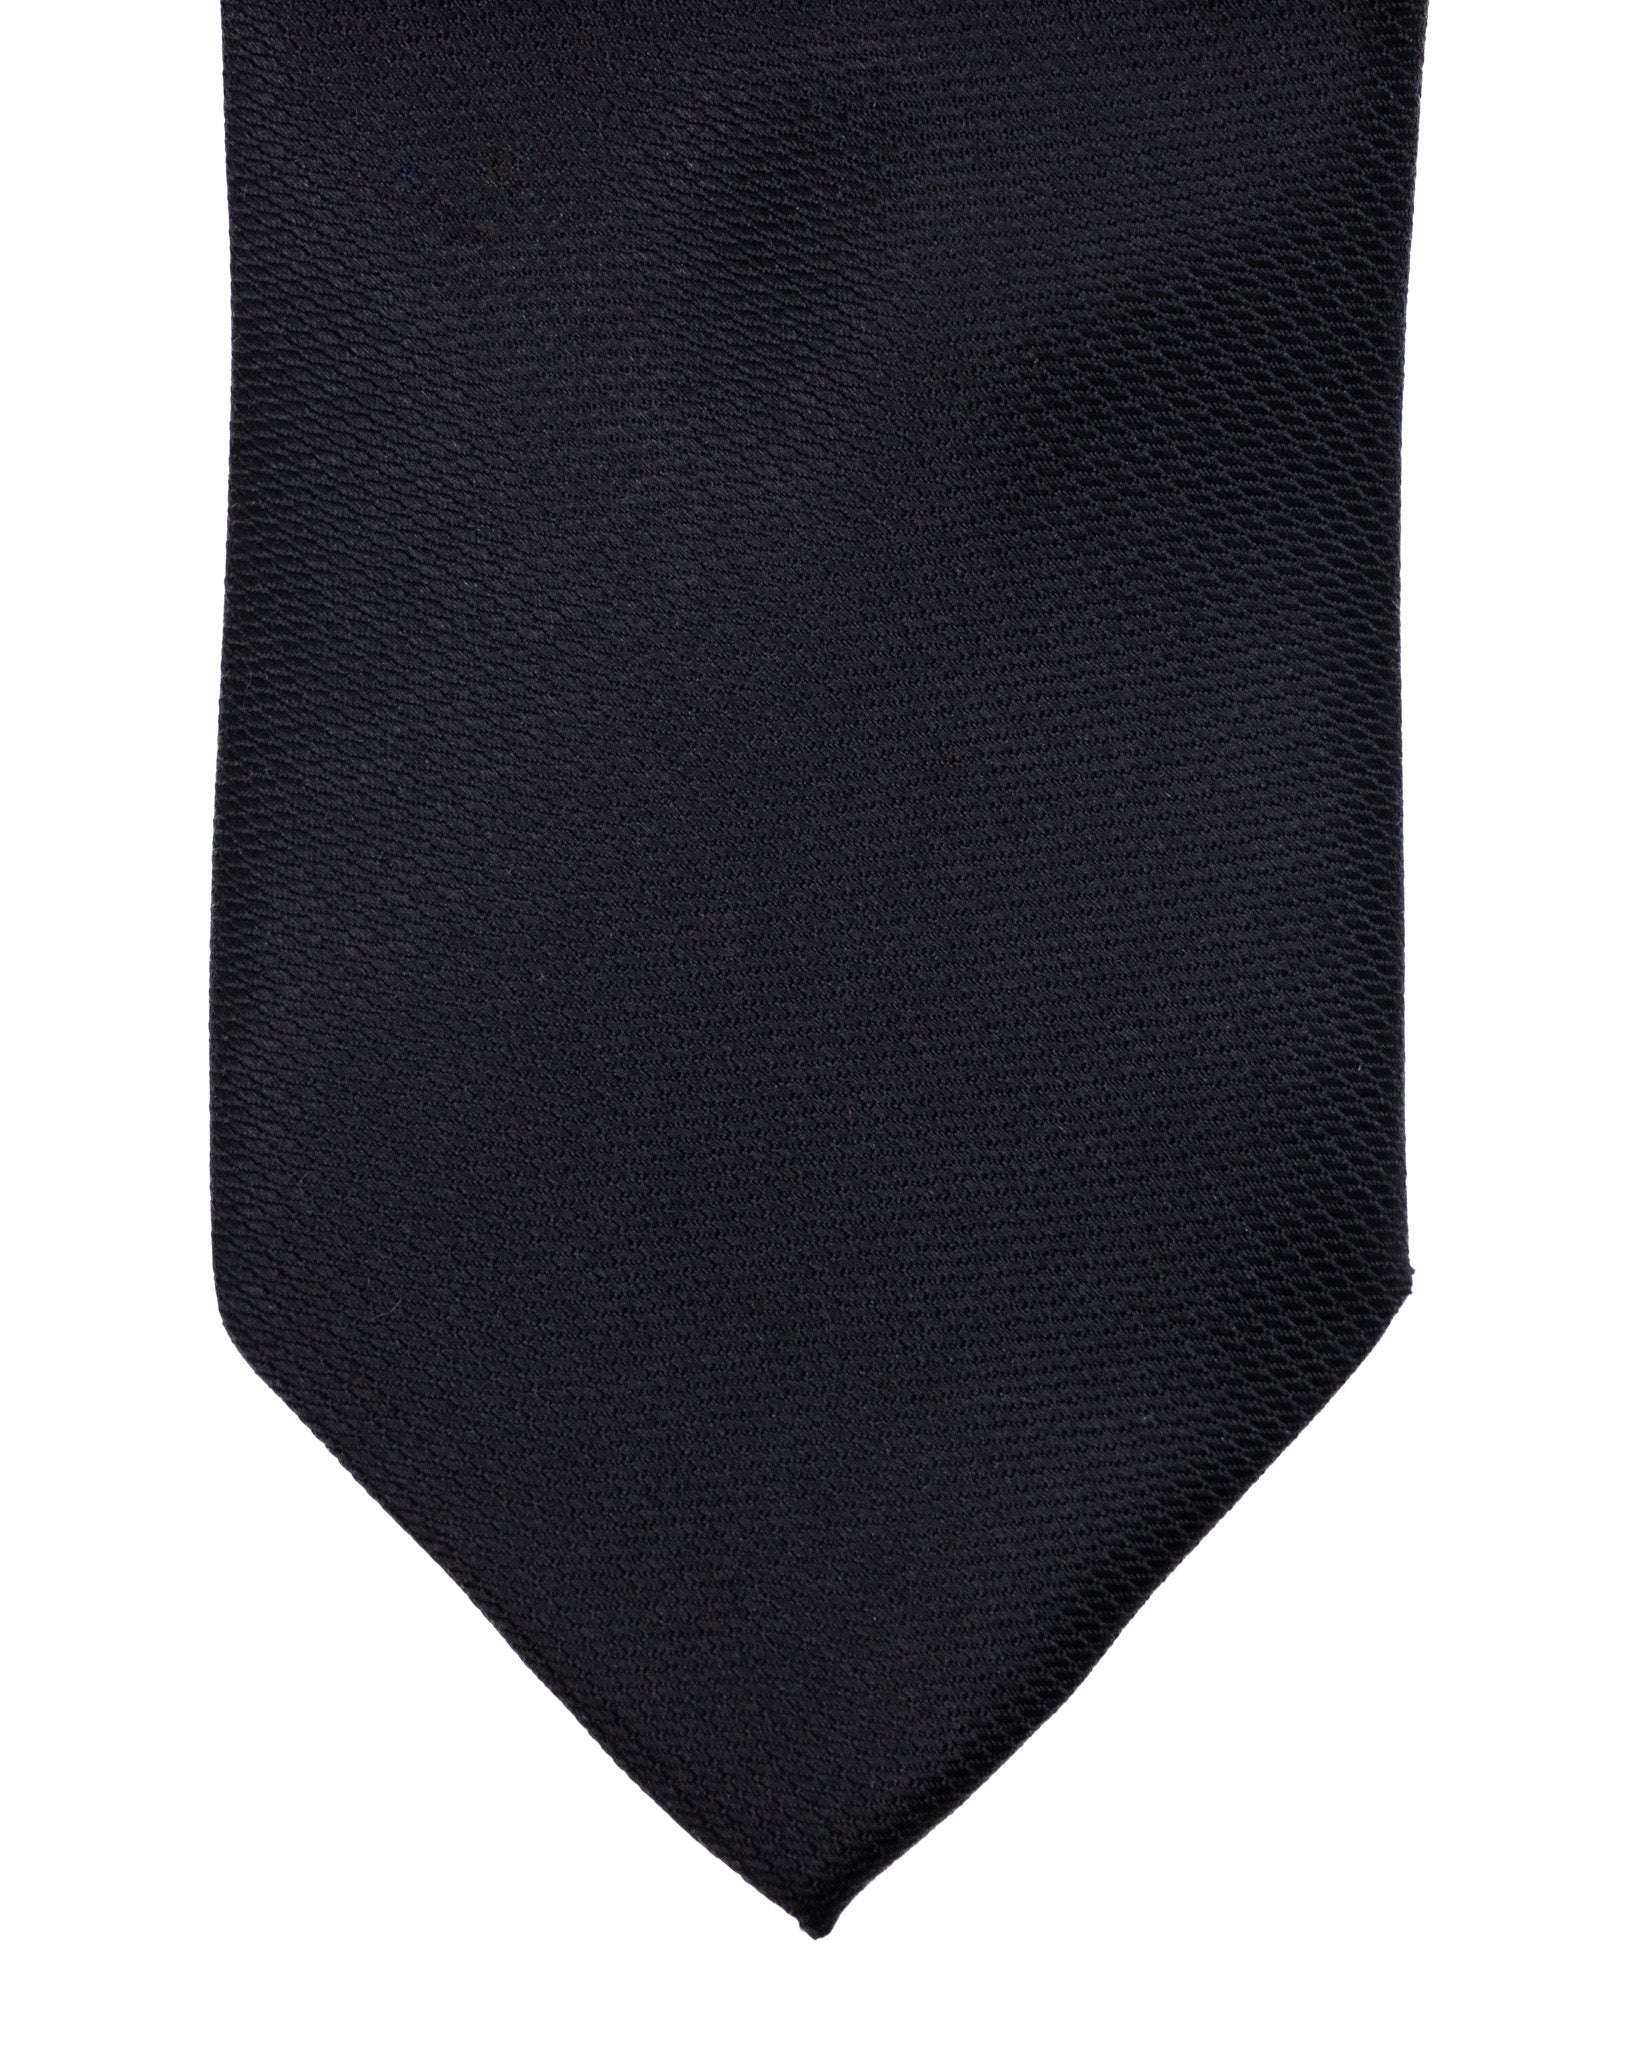 Tie - in black textured silk